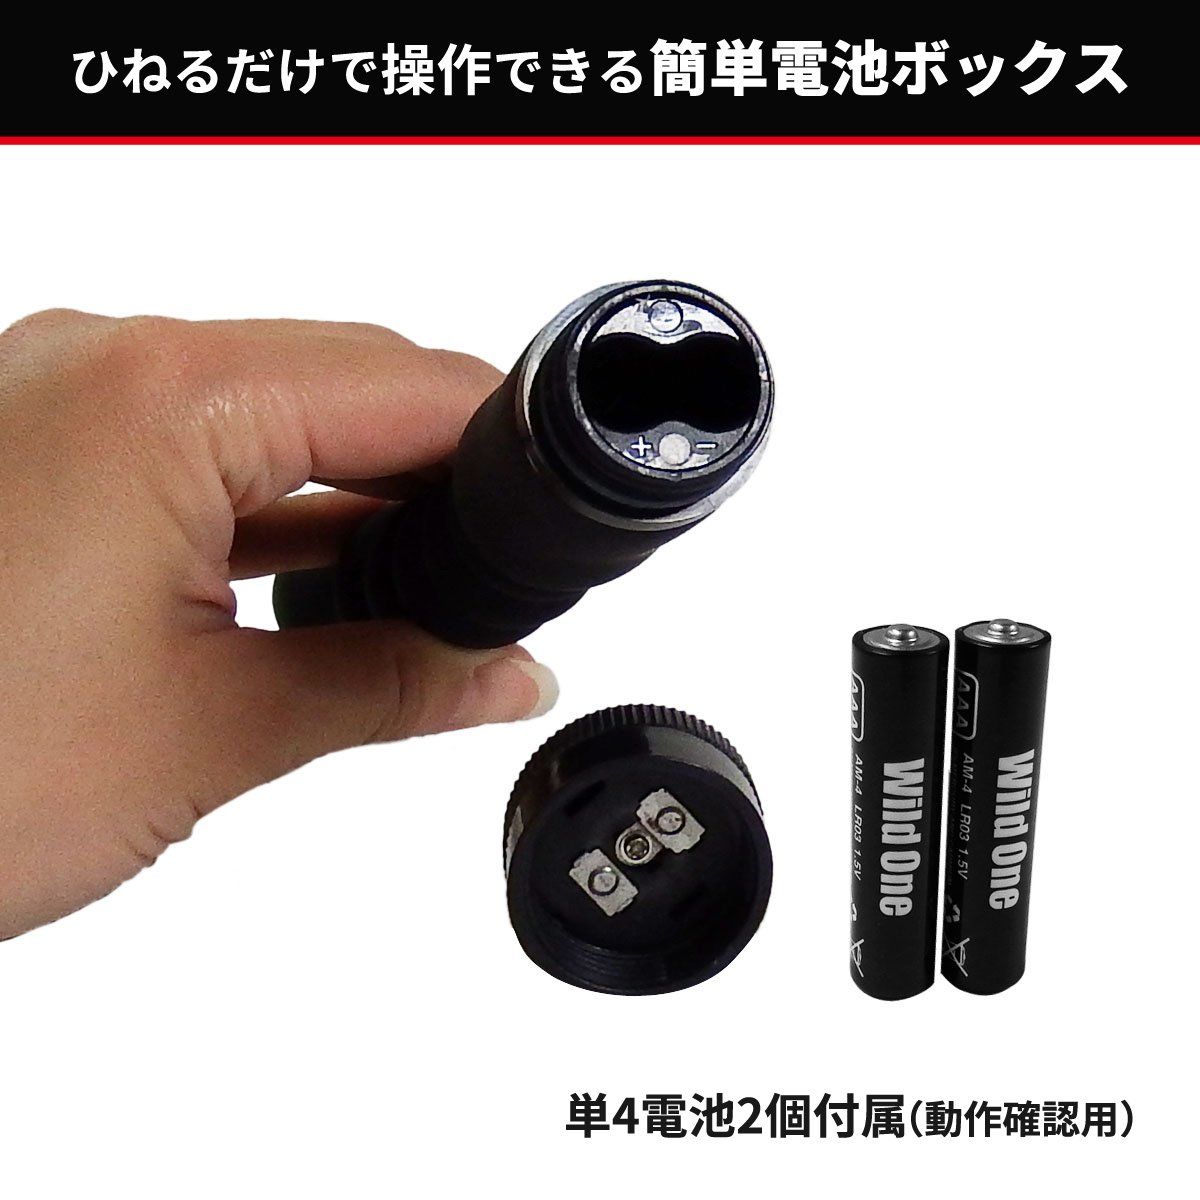 SSI JAPAN 絕對潮吹 ANALIST 010 螺旋扭紋後庭肛交震動器 後庭按摩器 購買